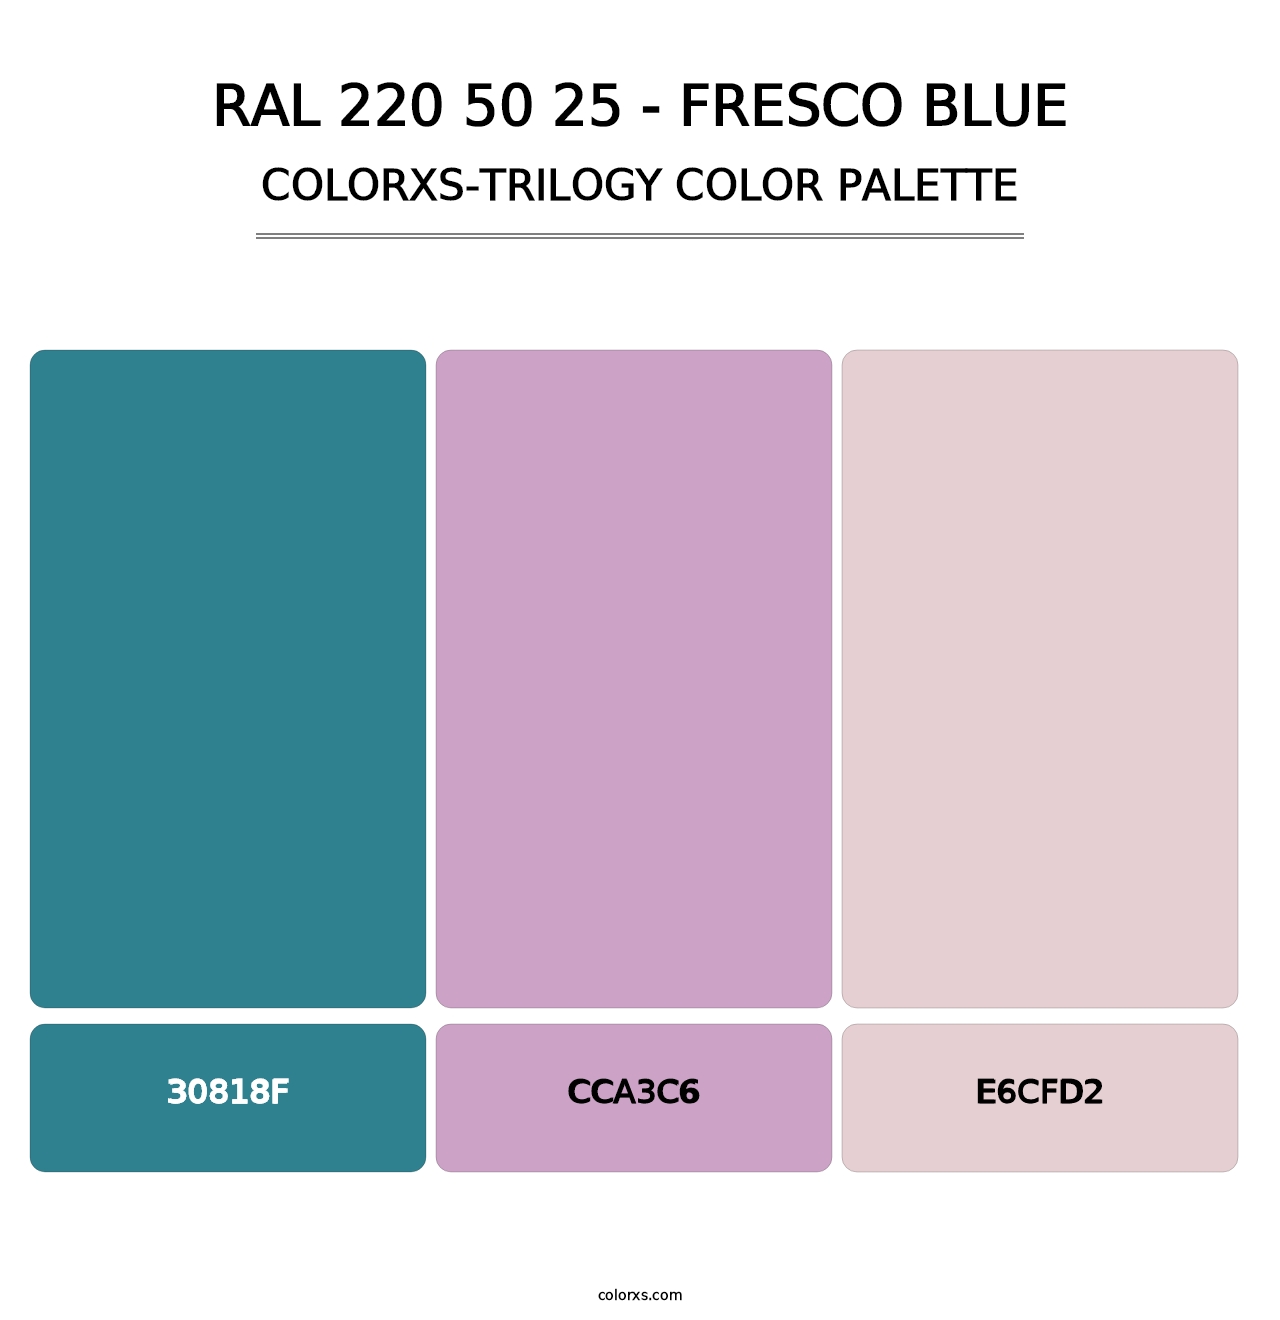 RAL 220 50 25 - Fresco Blue - Colorxs Trilogy Palette